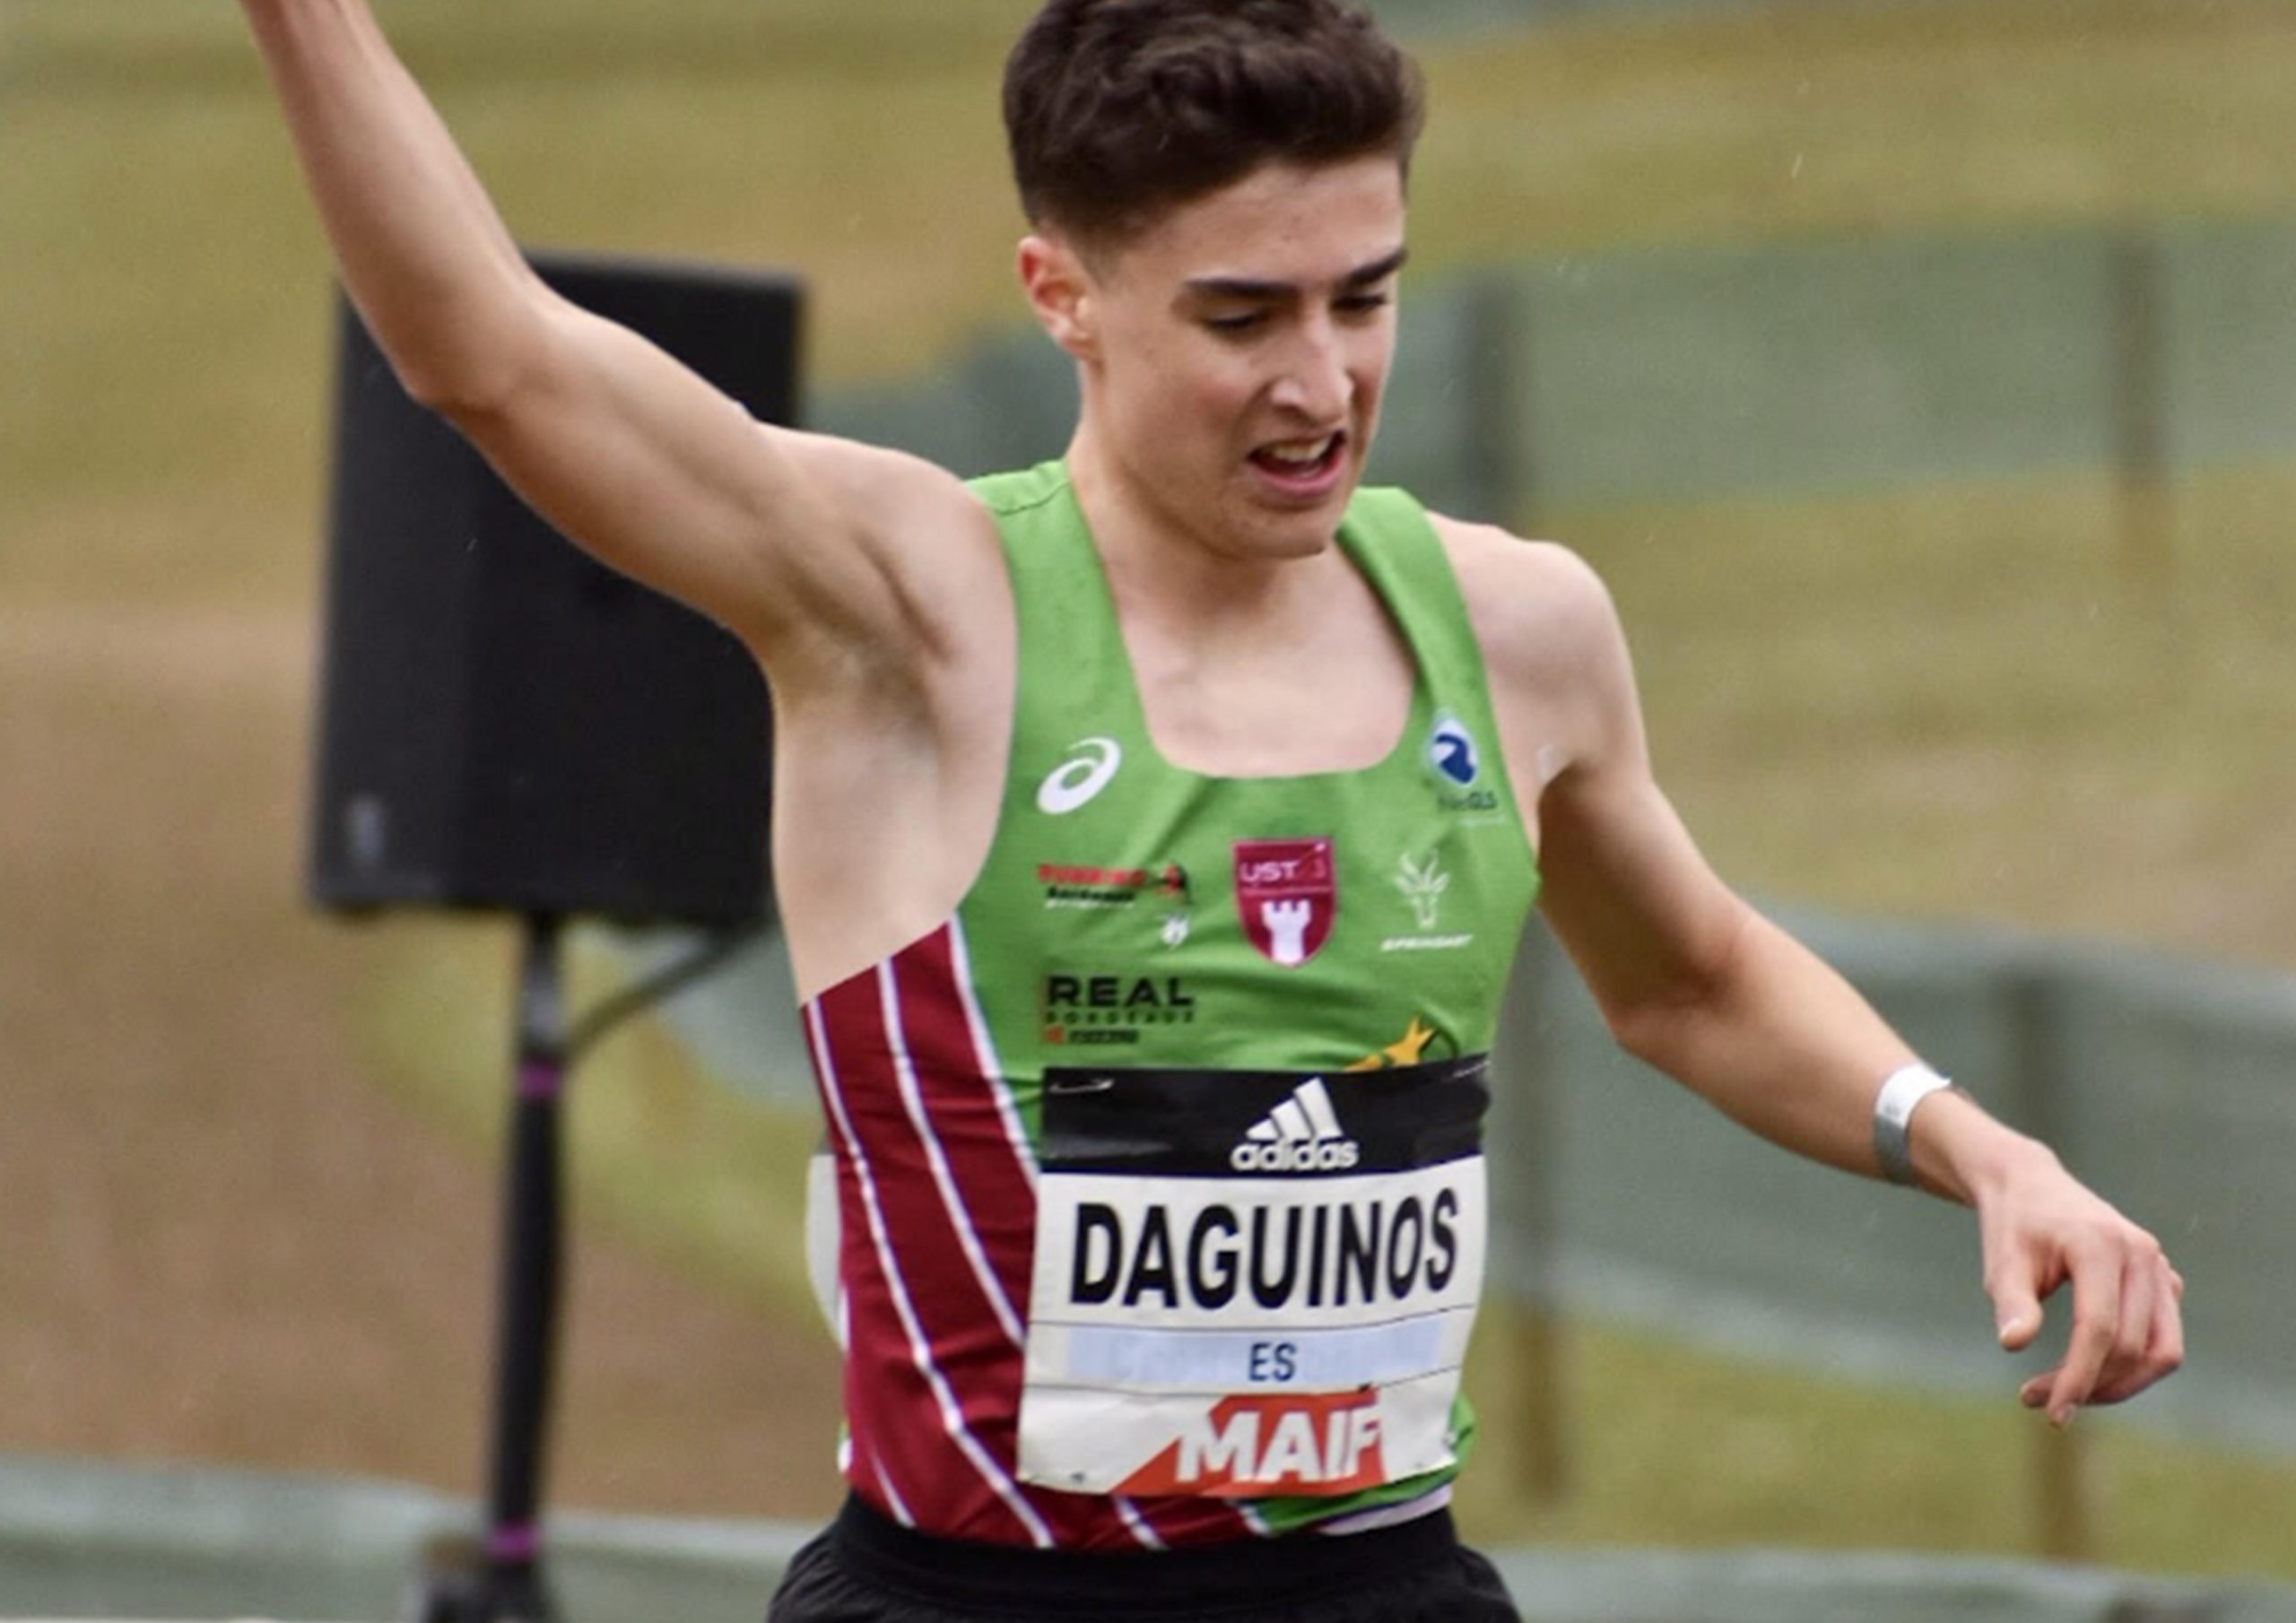 Etienne Daguinos vice champion de France du 5km !